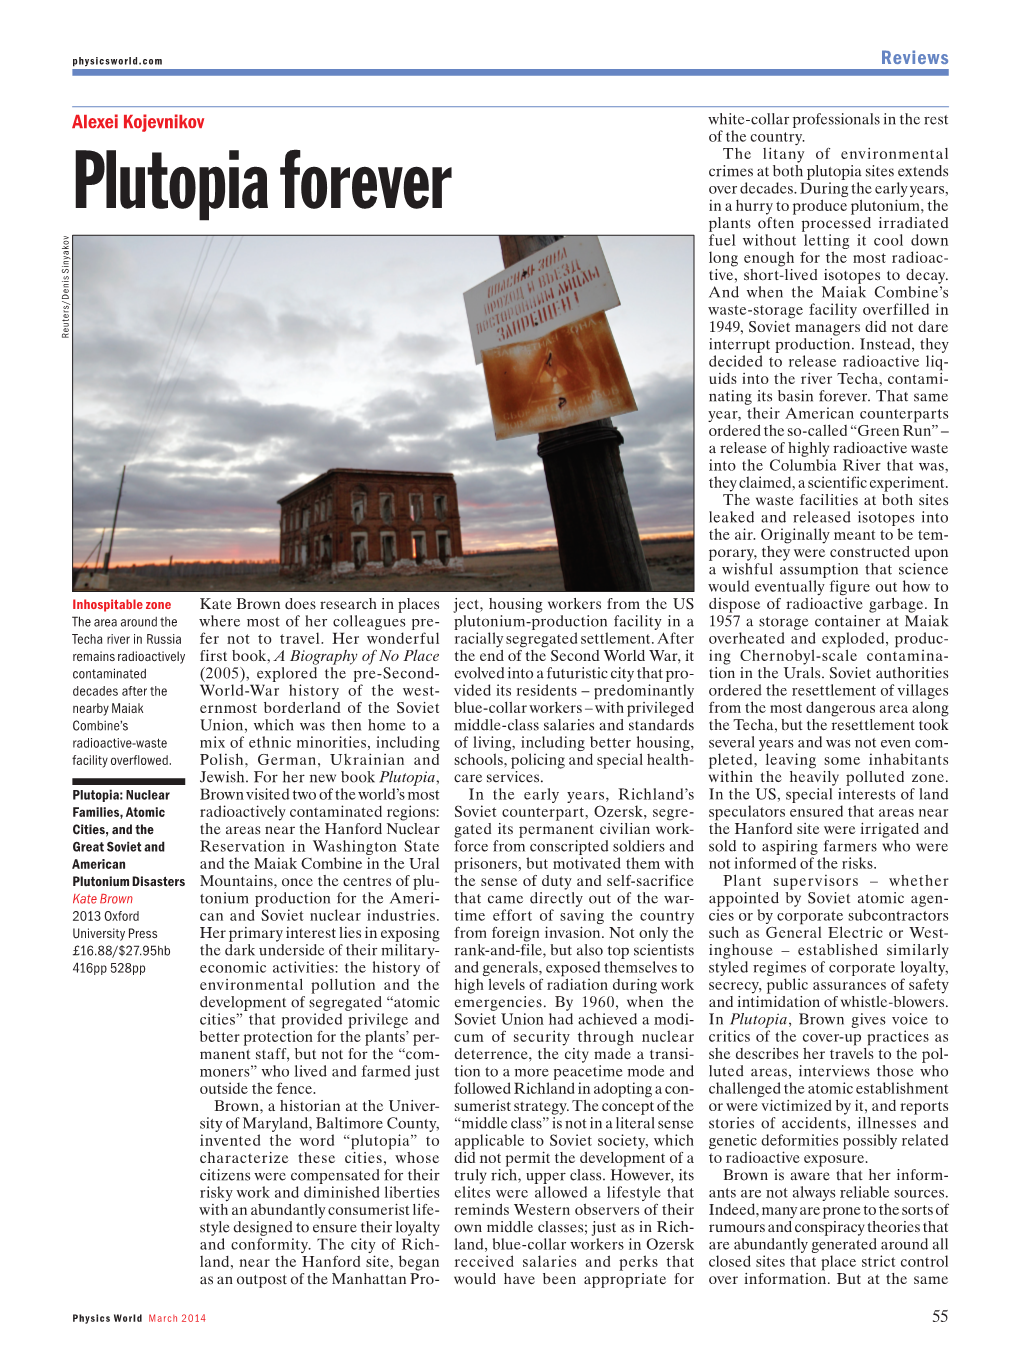 Plutopia Forever